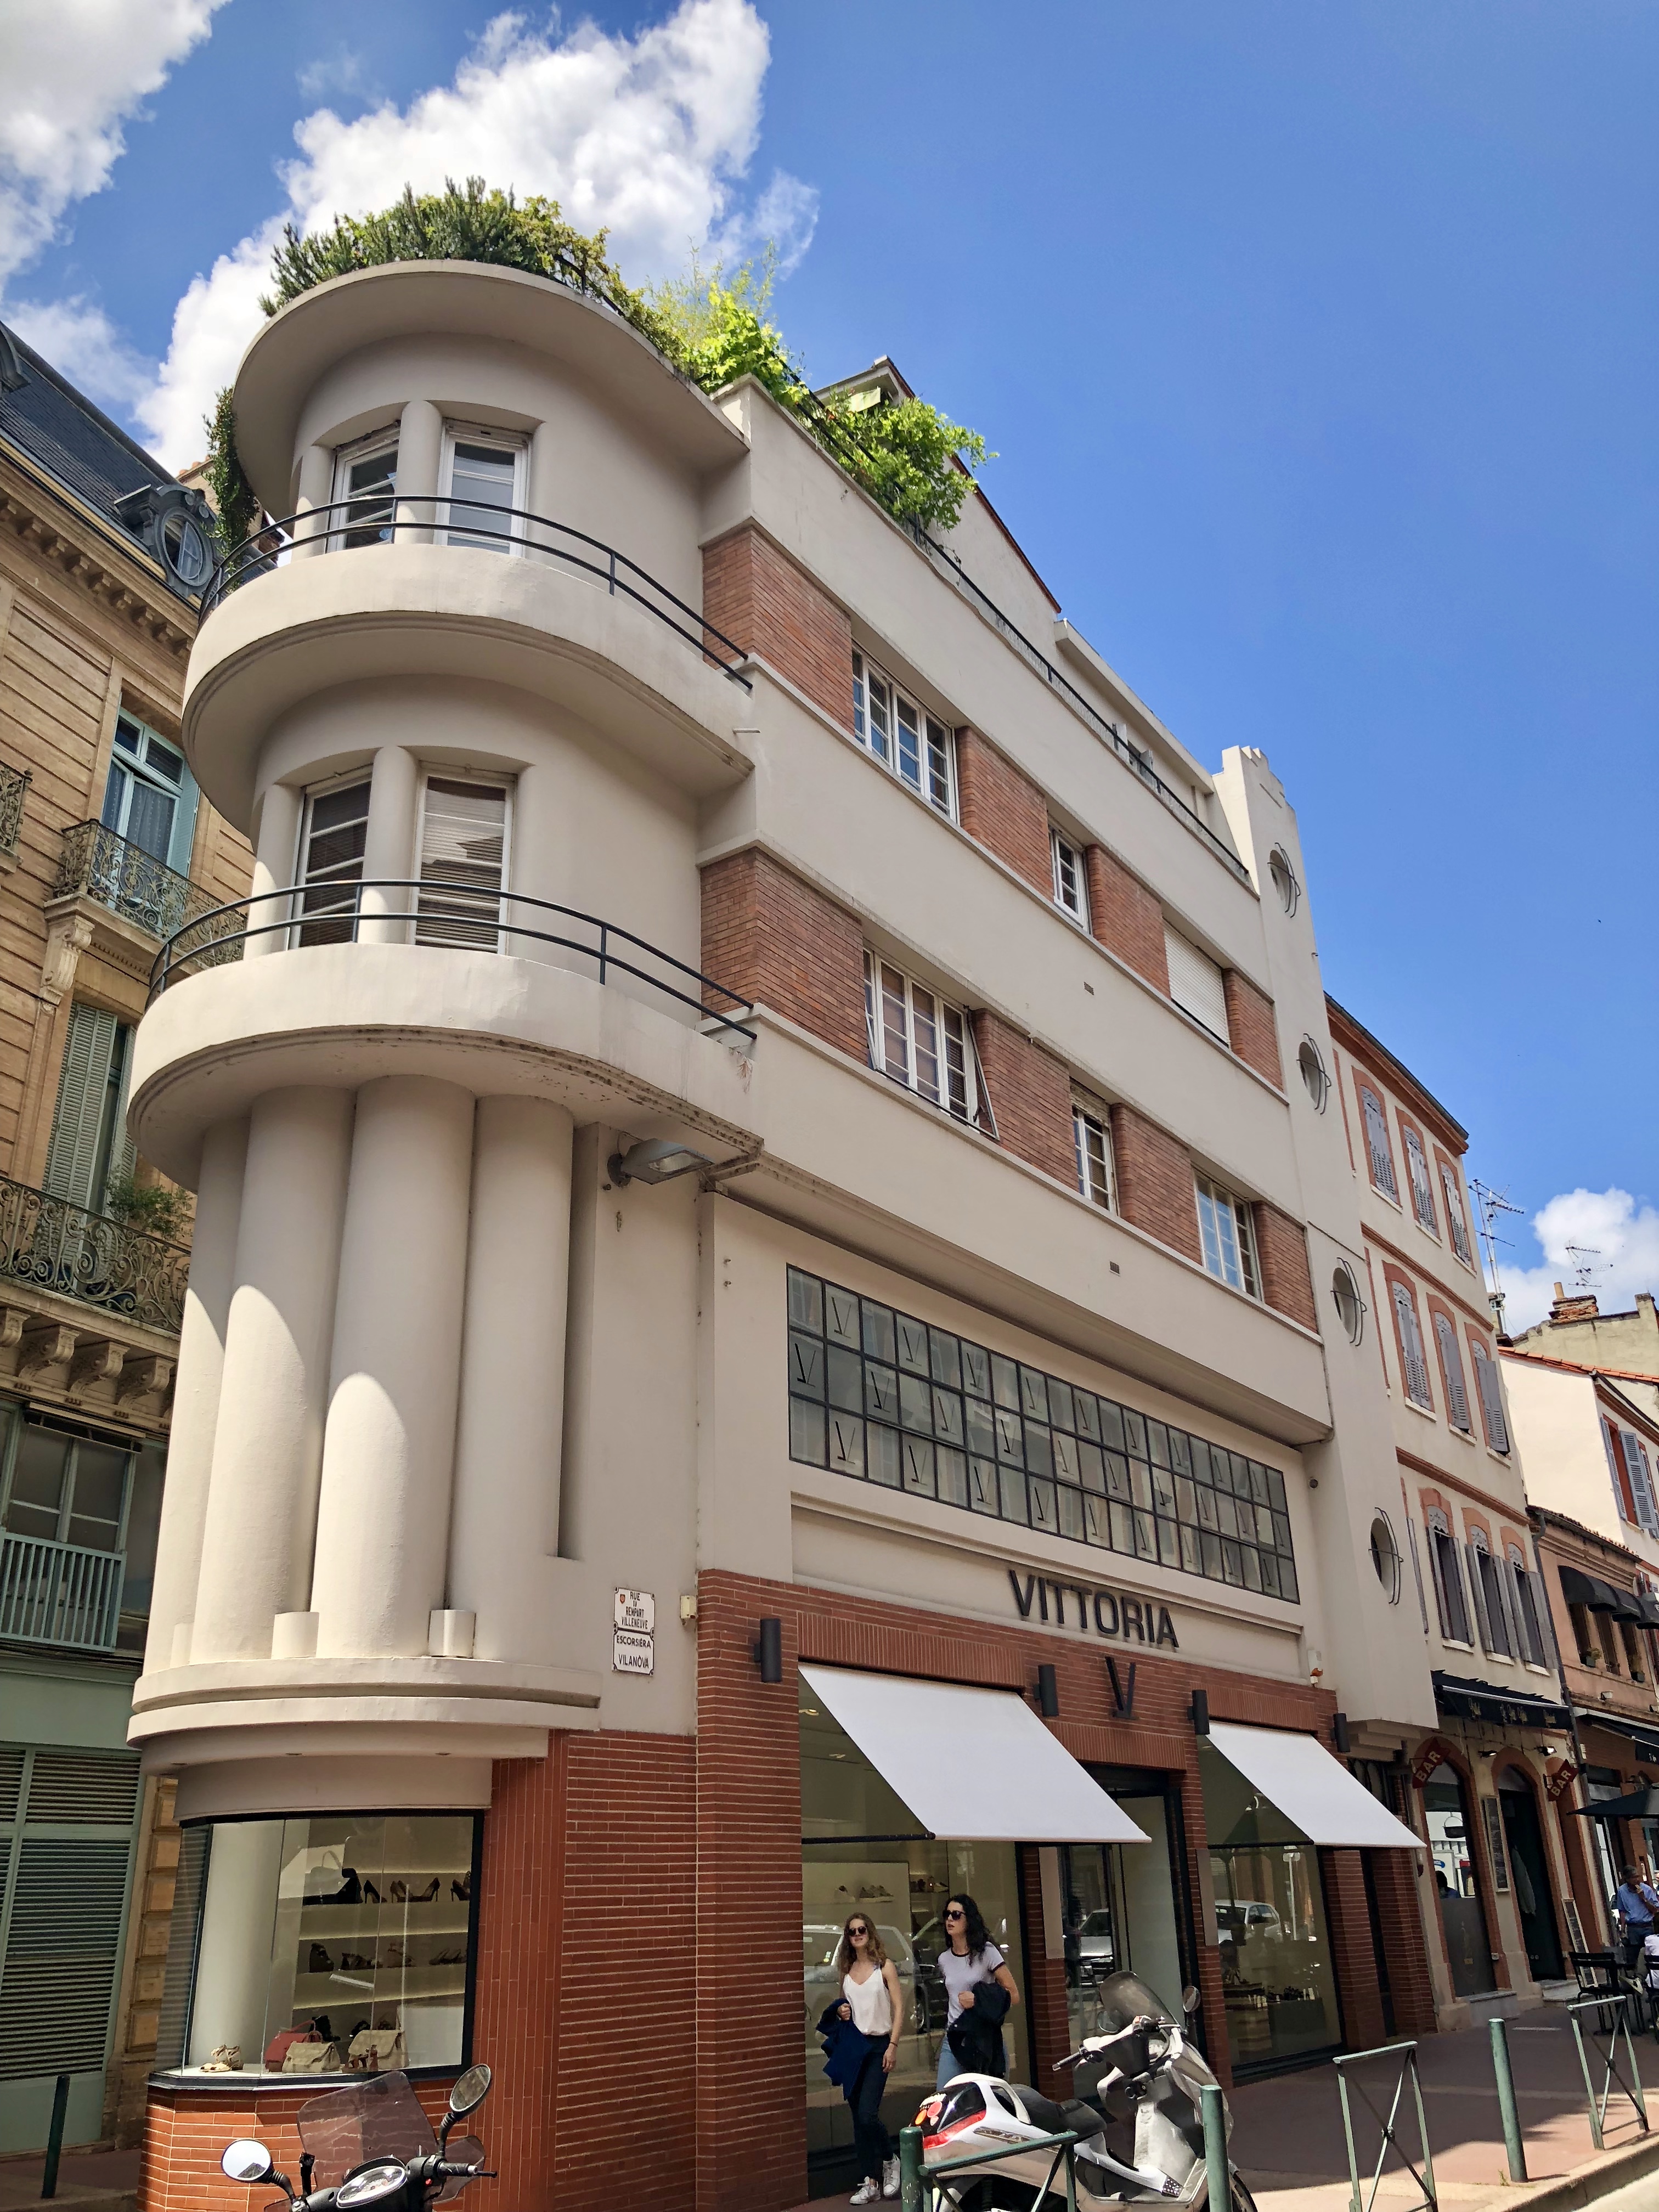 Immeuble Benjamin, rue du Rempart Villeneuve, arch. M. Munvez, 1939